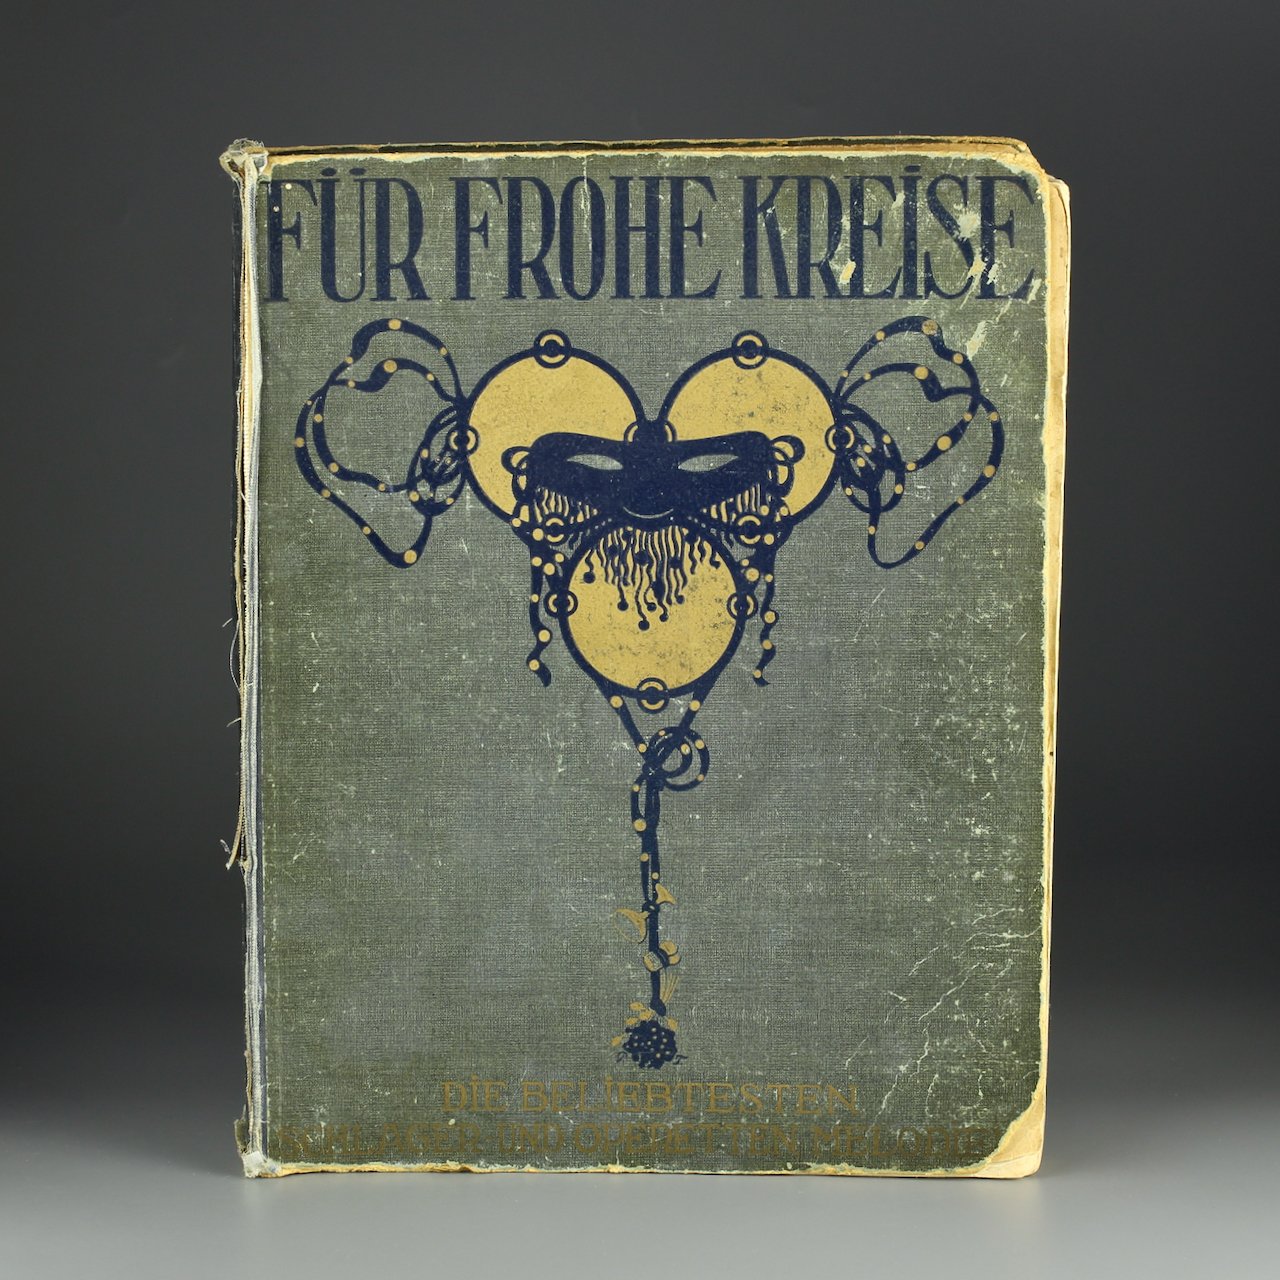 Антикварный альбом с нотами Fur Frohe Creise 1910 год